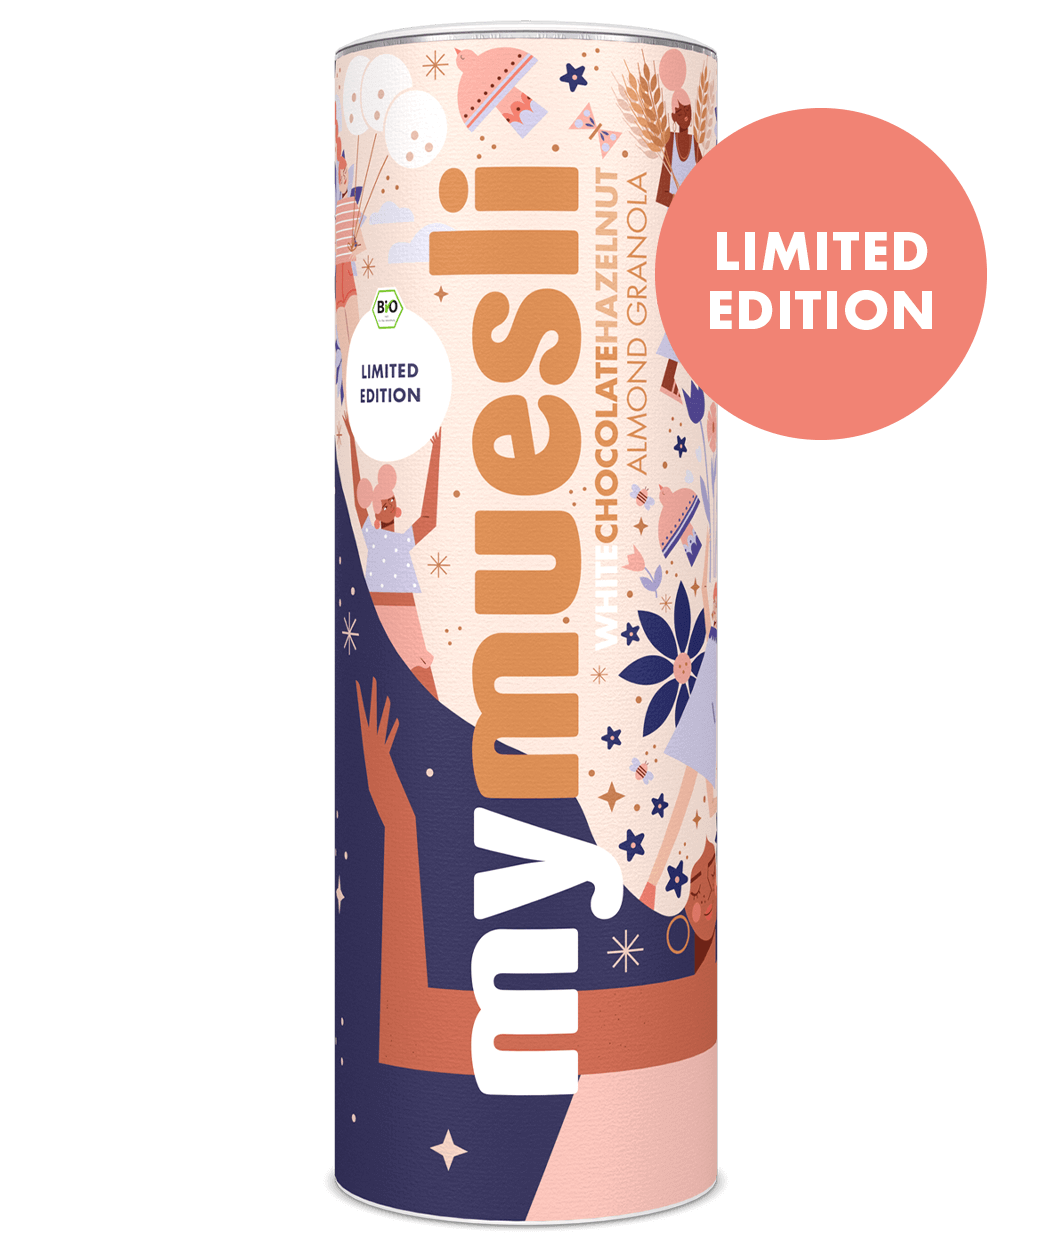 Das White Chocolate Almond Granola von mymuesli mit Design von Nina Clausonet ist eine Limited Edition!